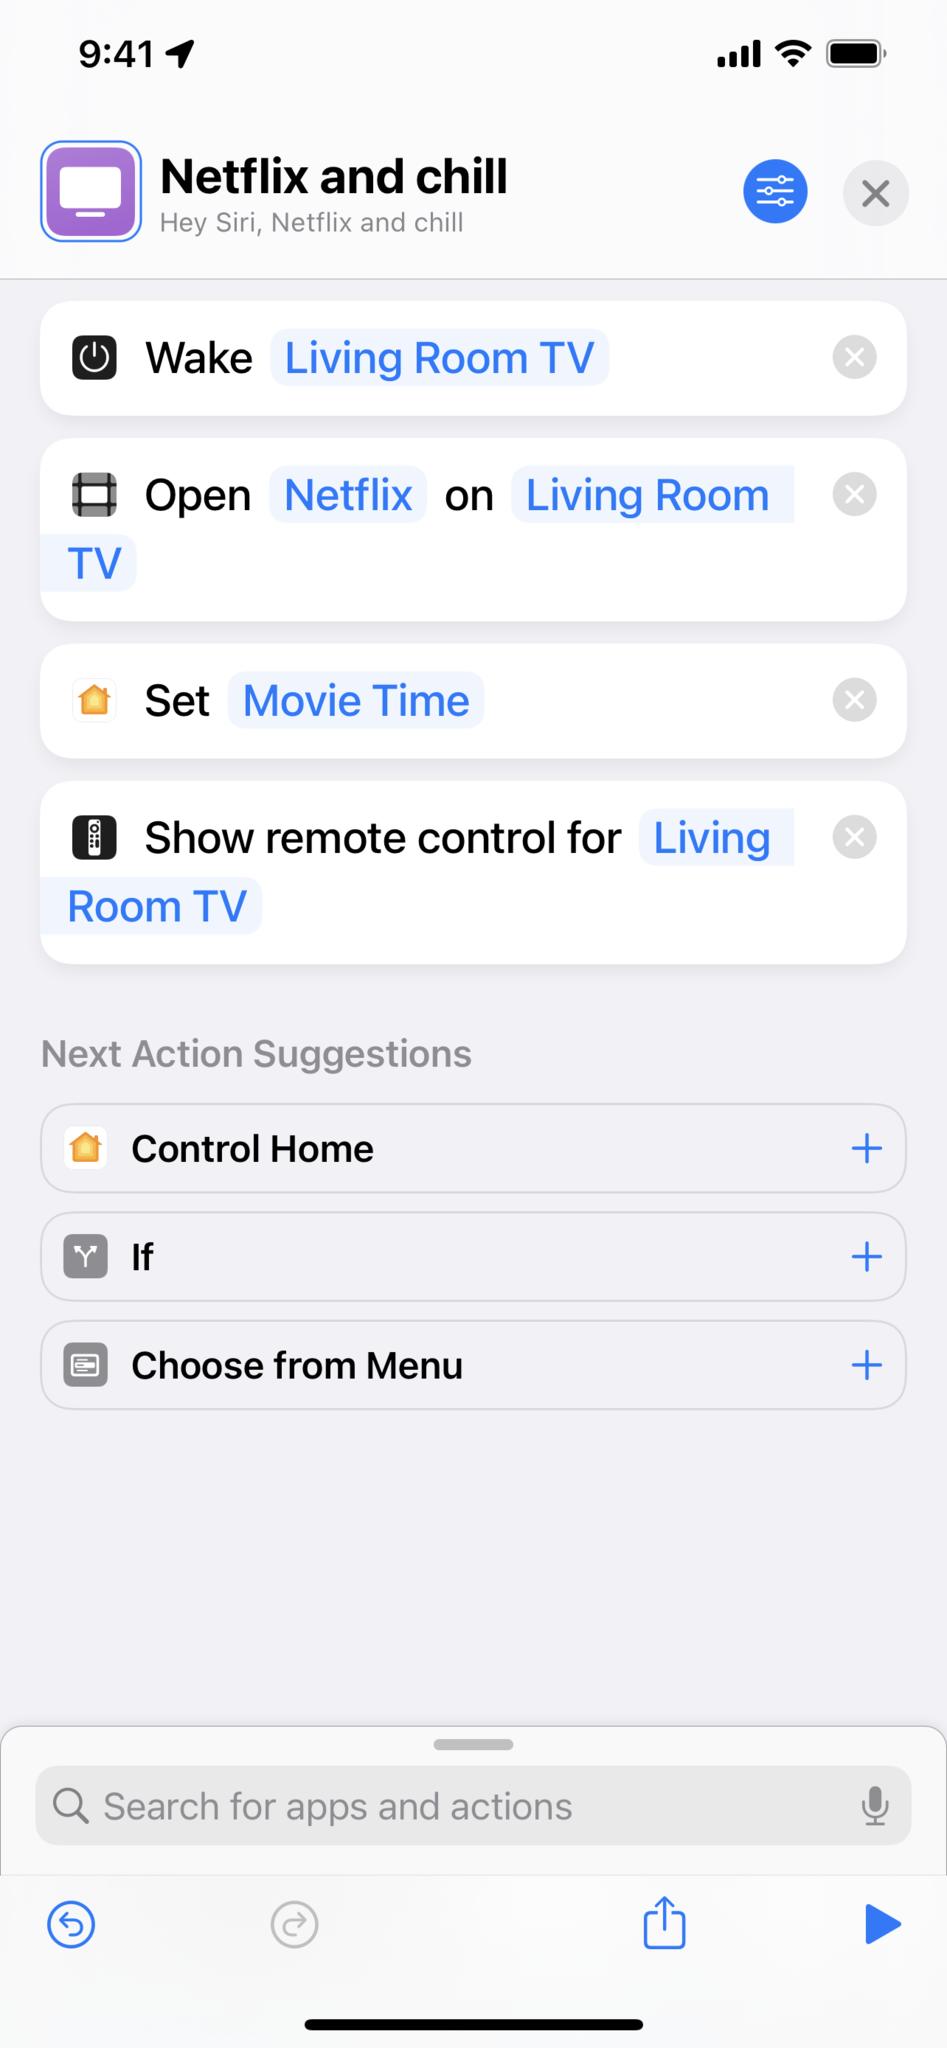 Снимок экрана ярлыка Netflix и Chill, который выводит телевизор из спящего режима, открывает Netflix, включает режим Movie Time и показывает пульт дистанционного управления.